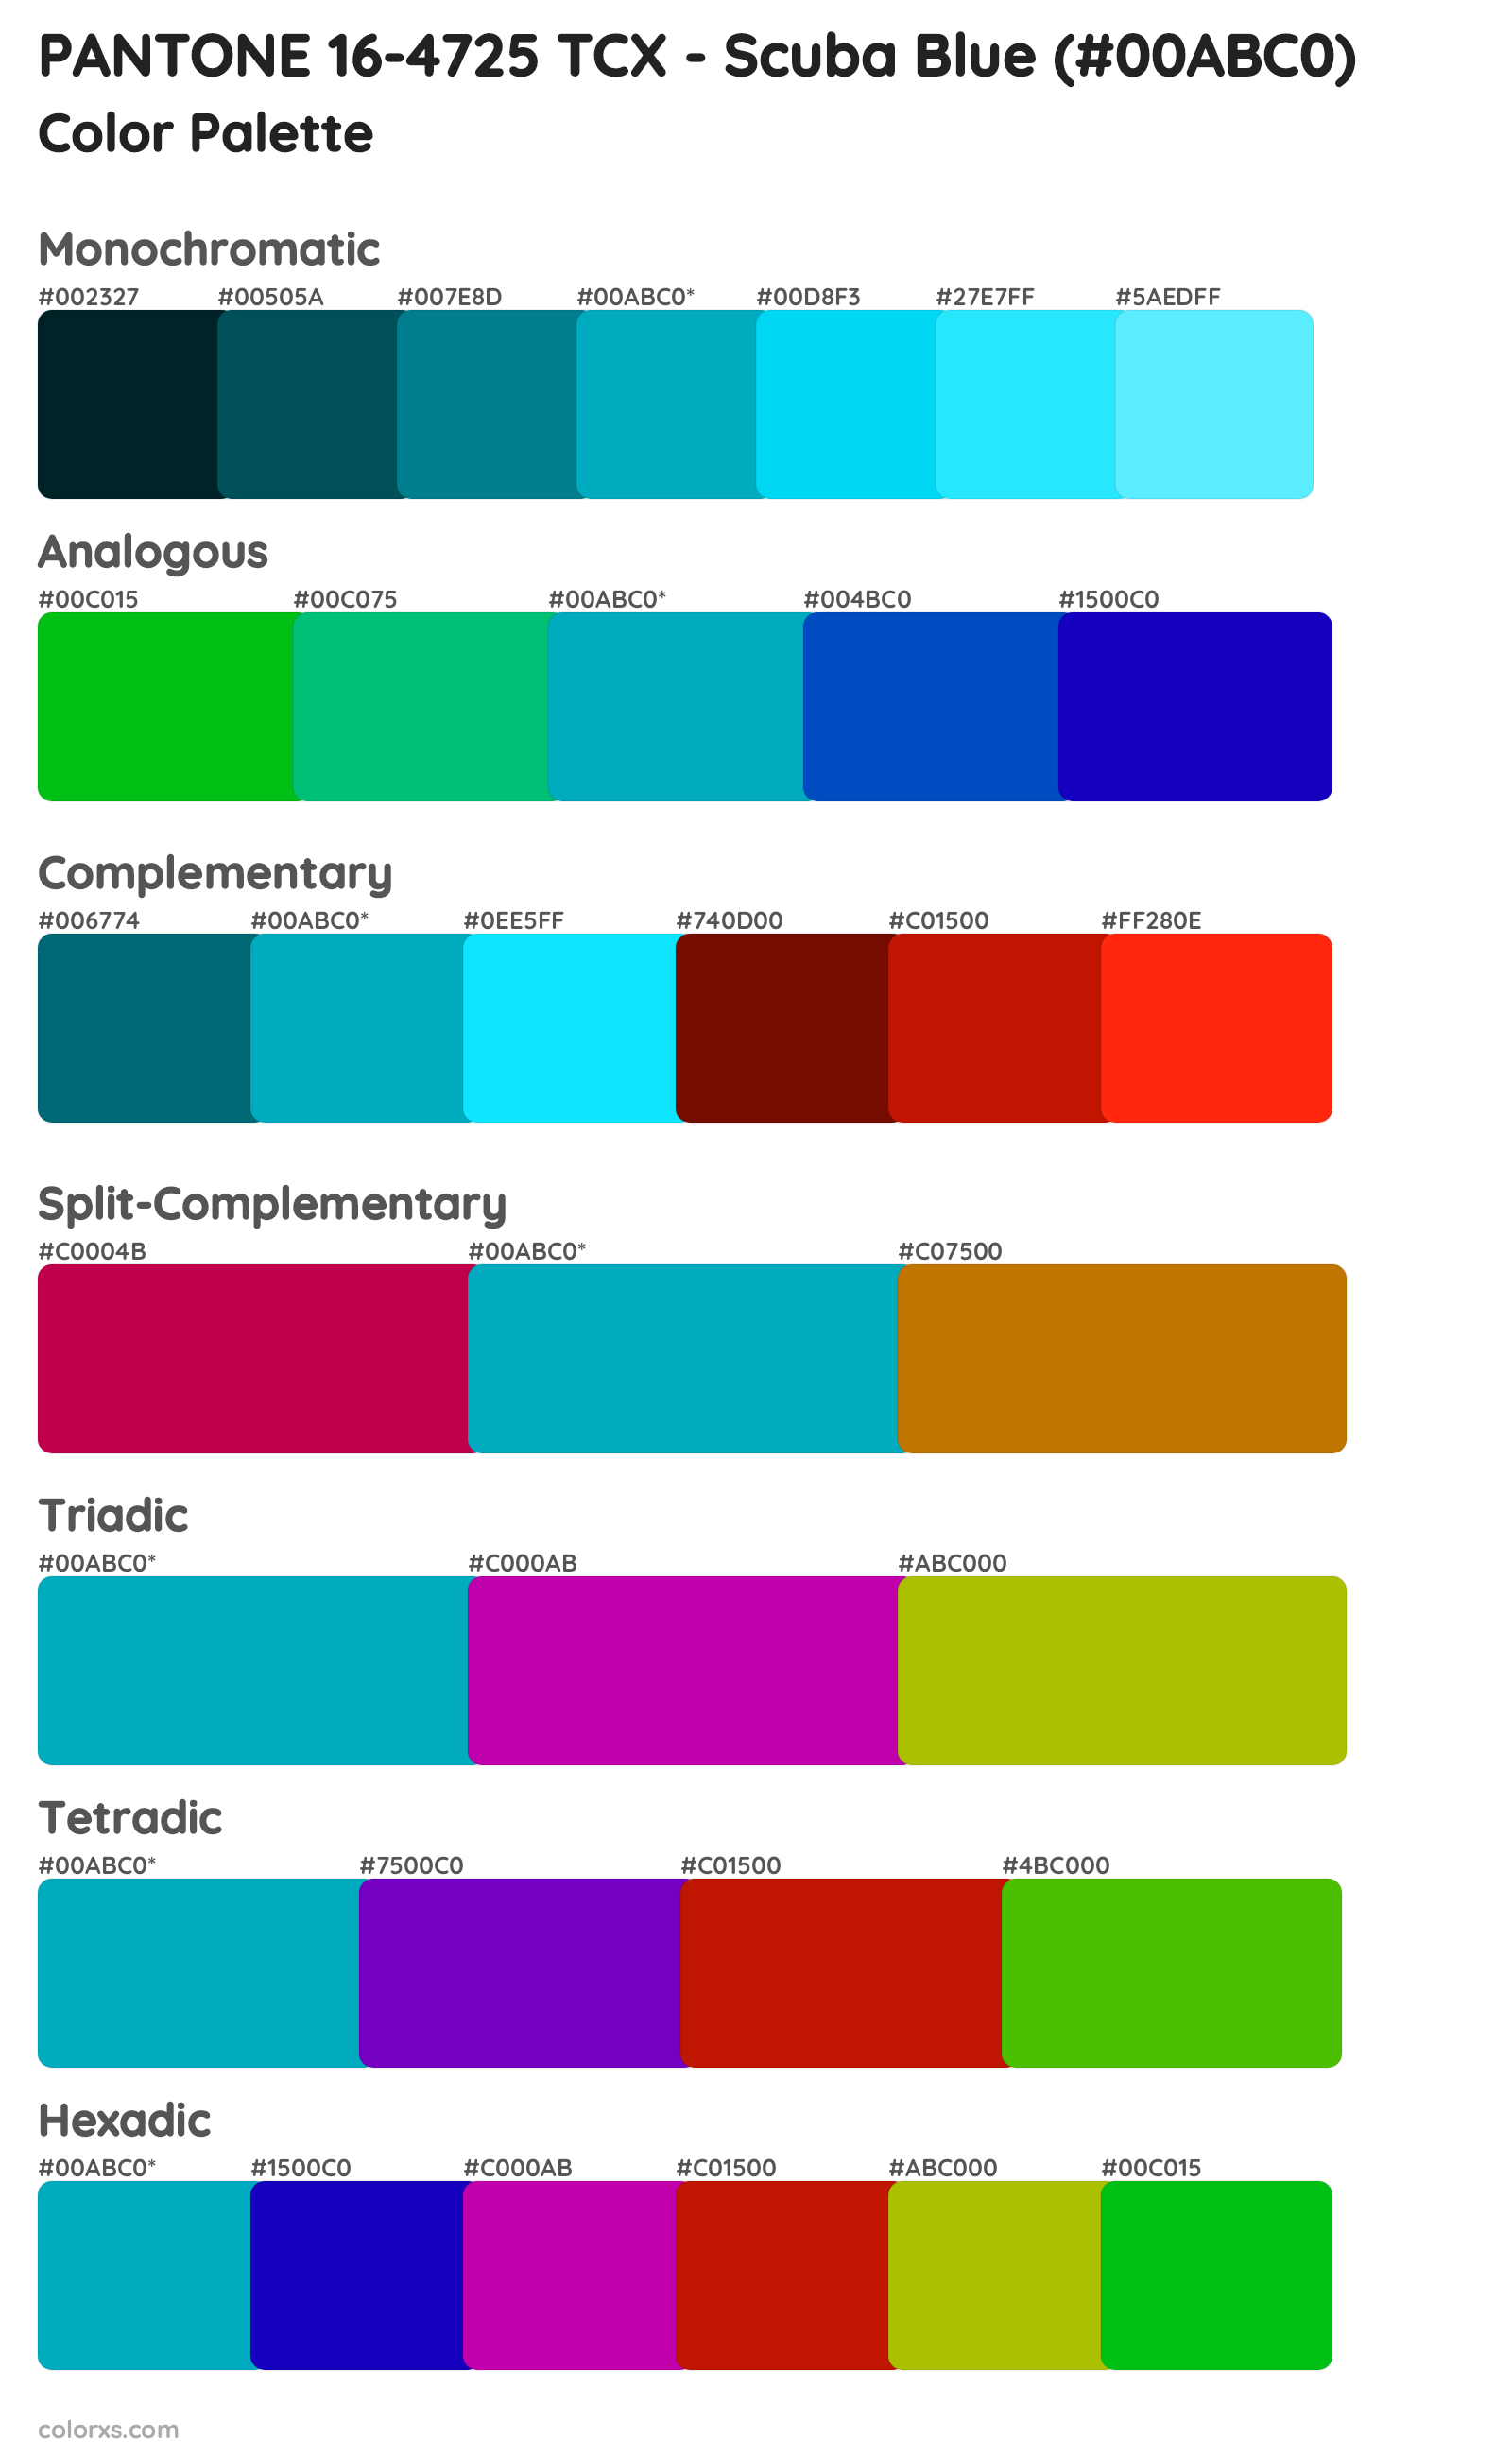 PANTONE 16-4725 TCX - Scuba Blue Color Scheme Palettes